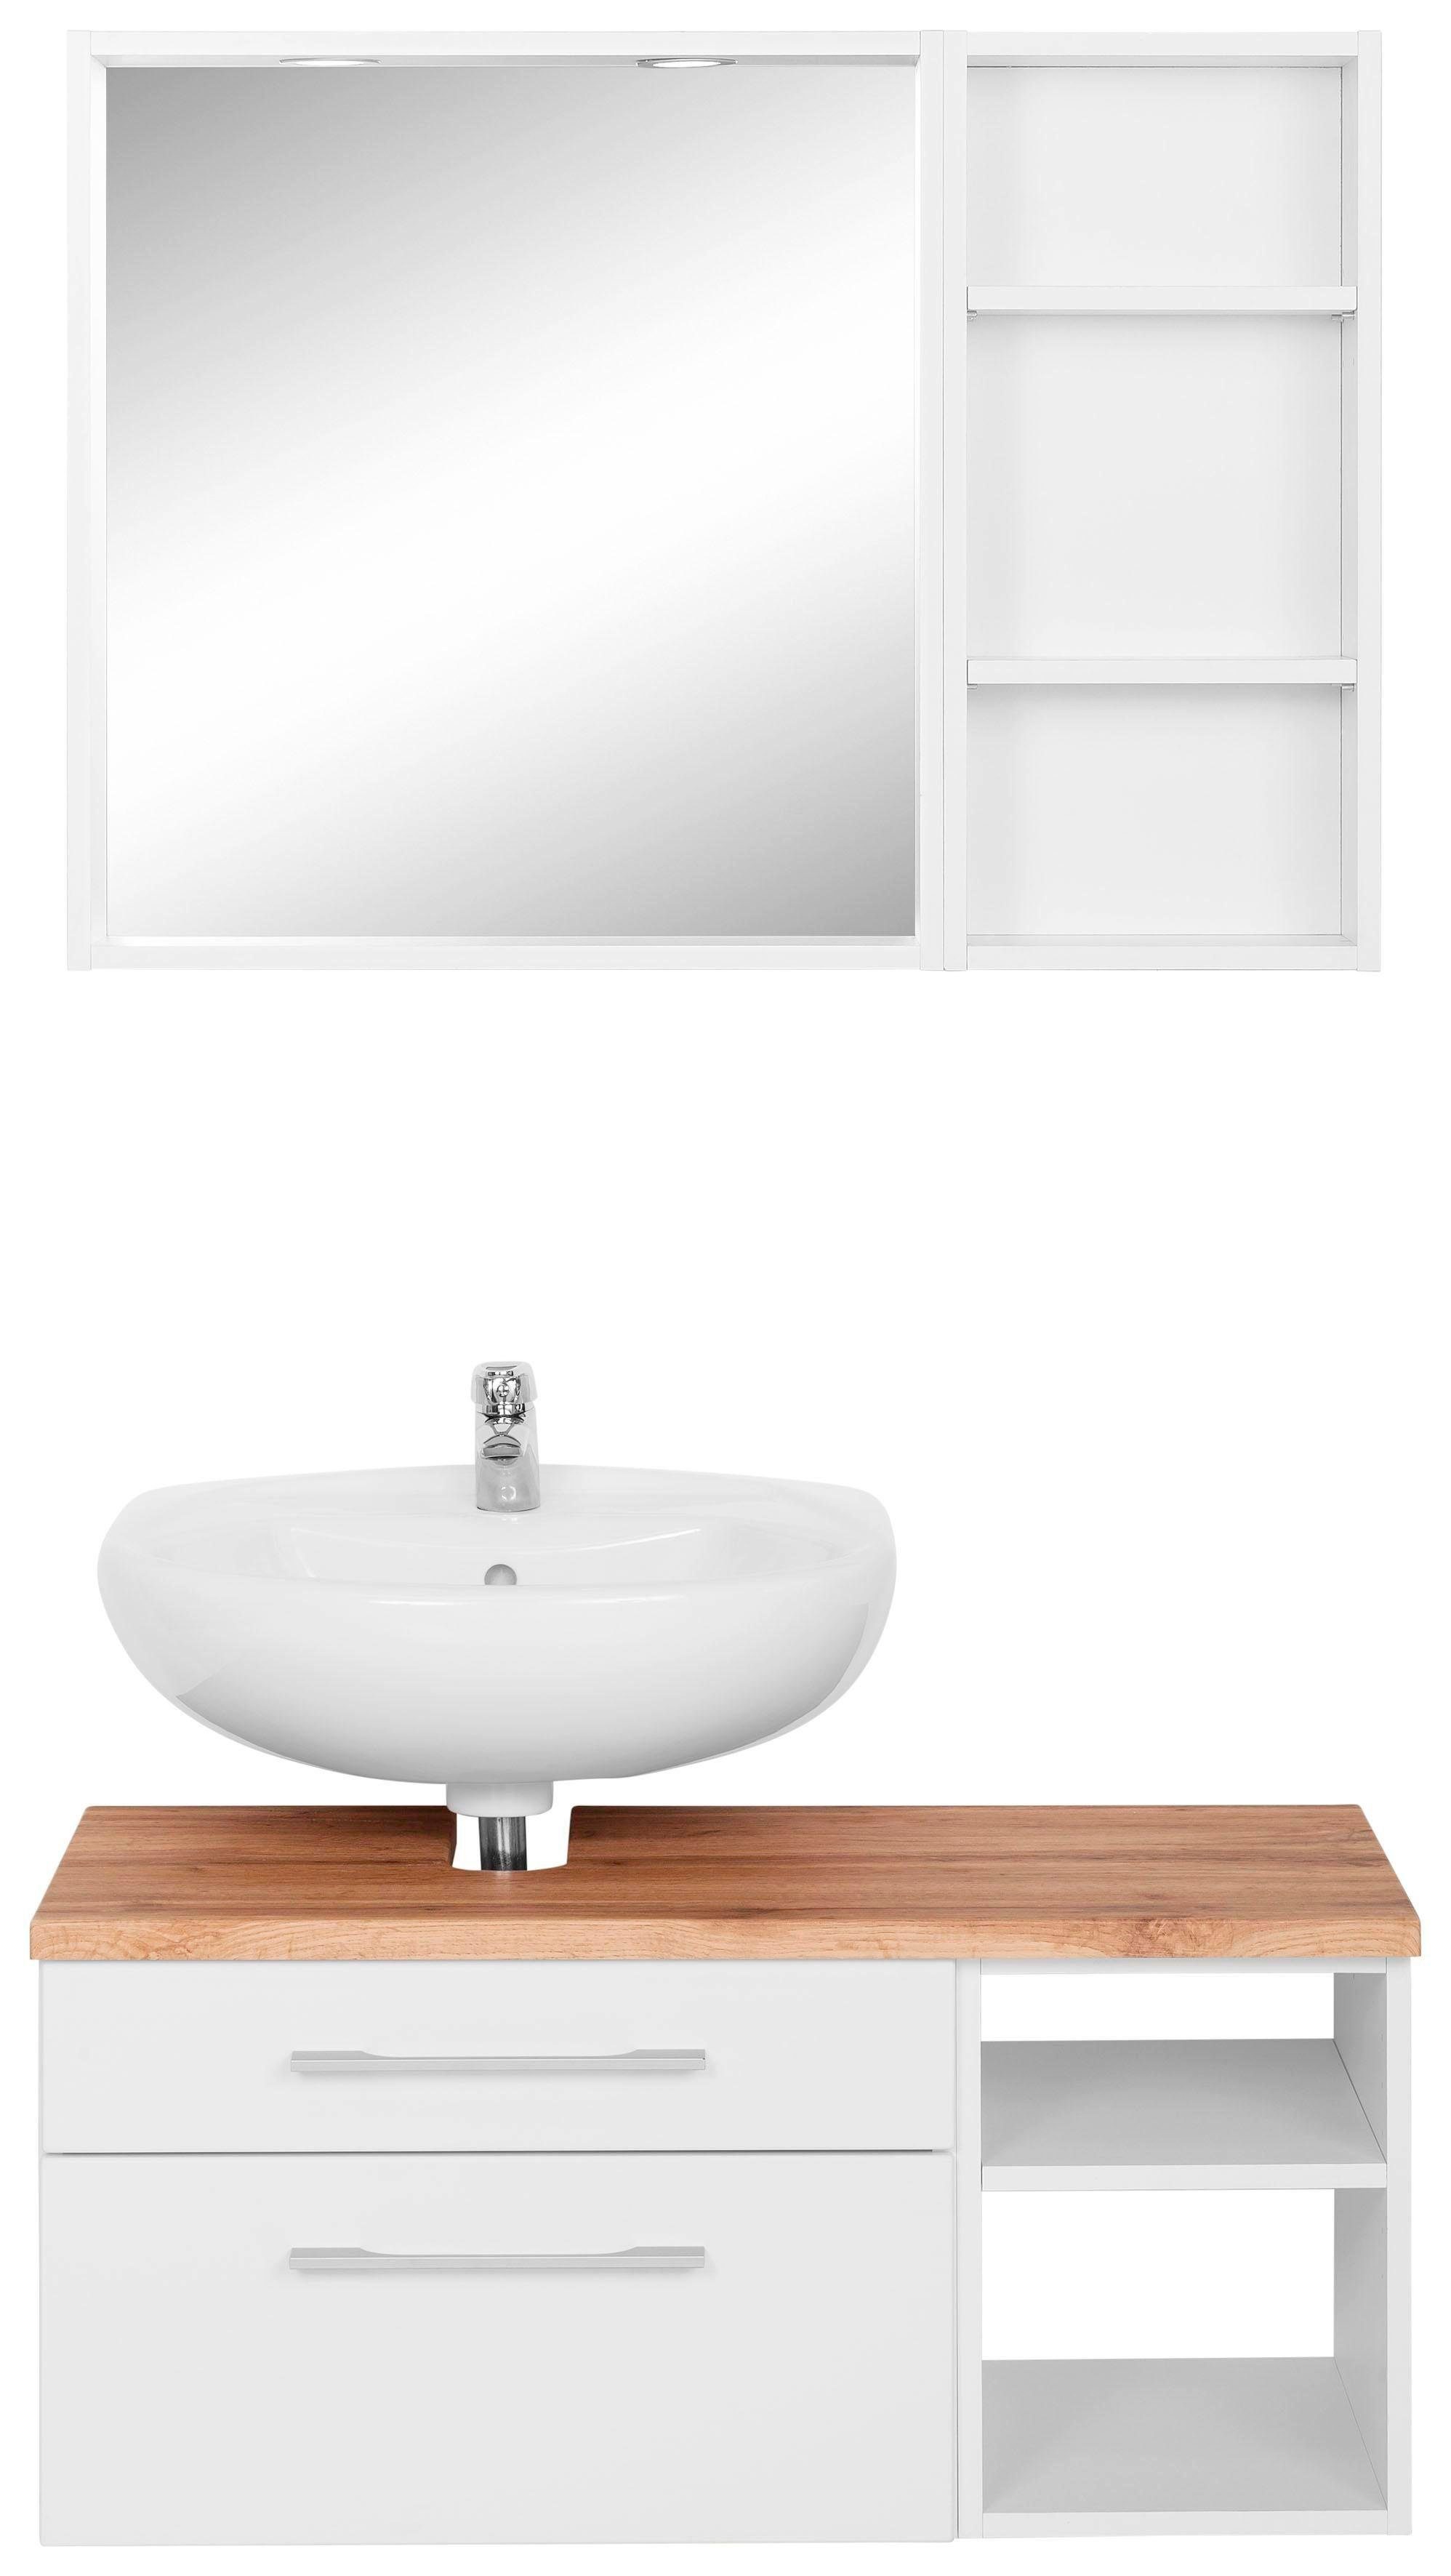 held moebel badkamerserie davos spiegel inclusief verlichting, rek en wastafelmeubel wit